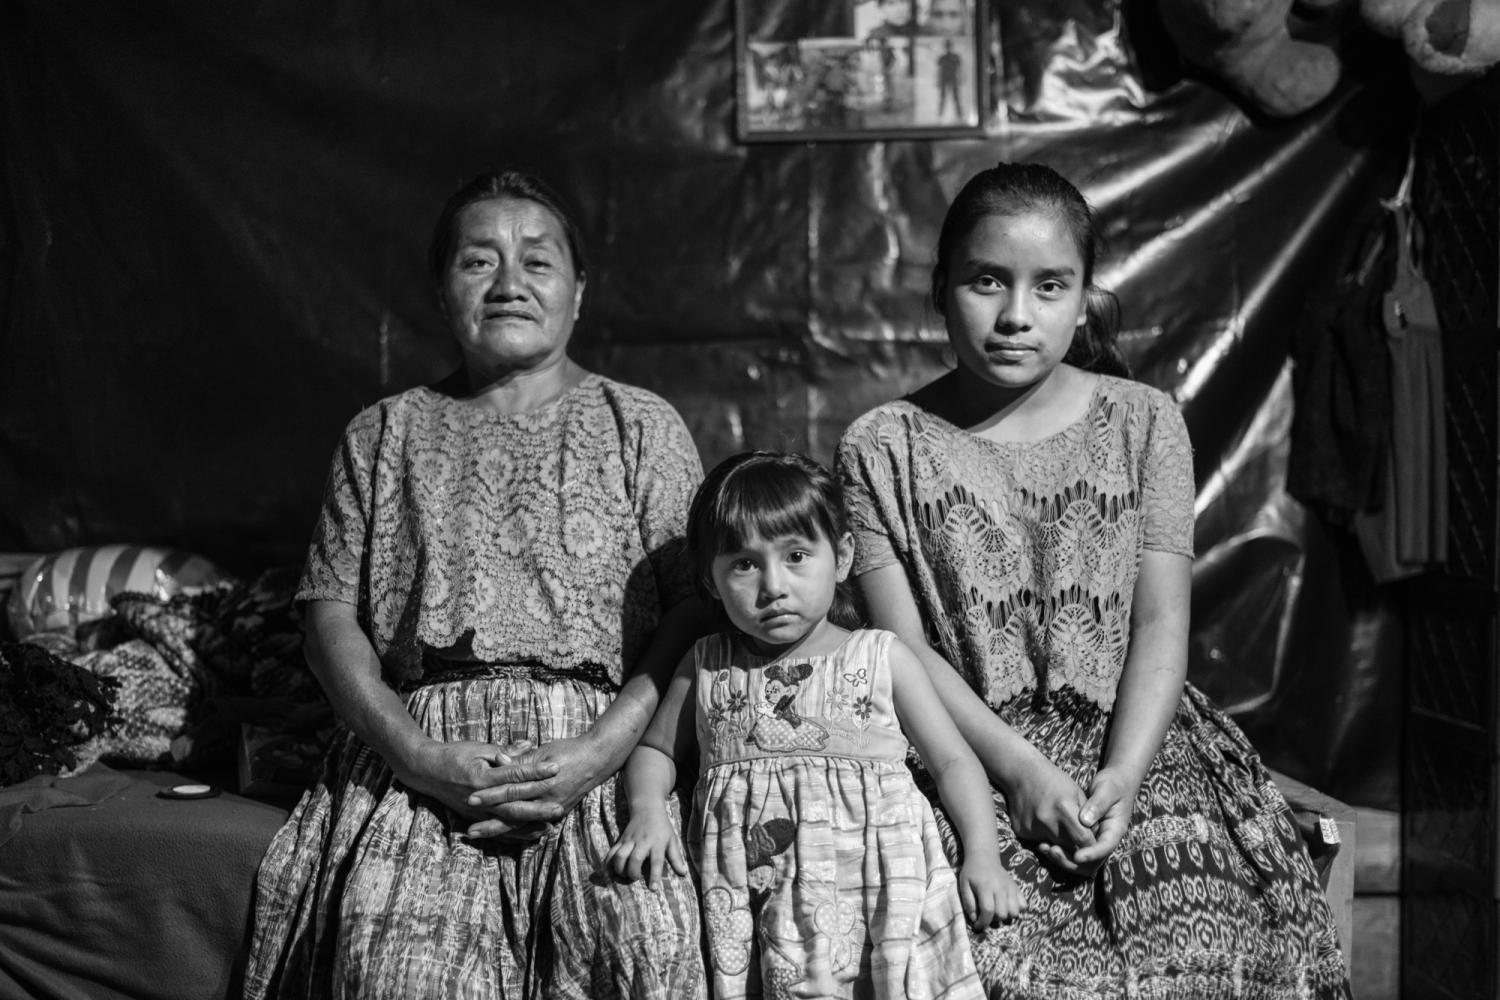 Los Olvidados Guatemala